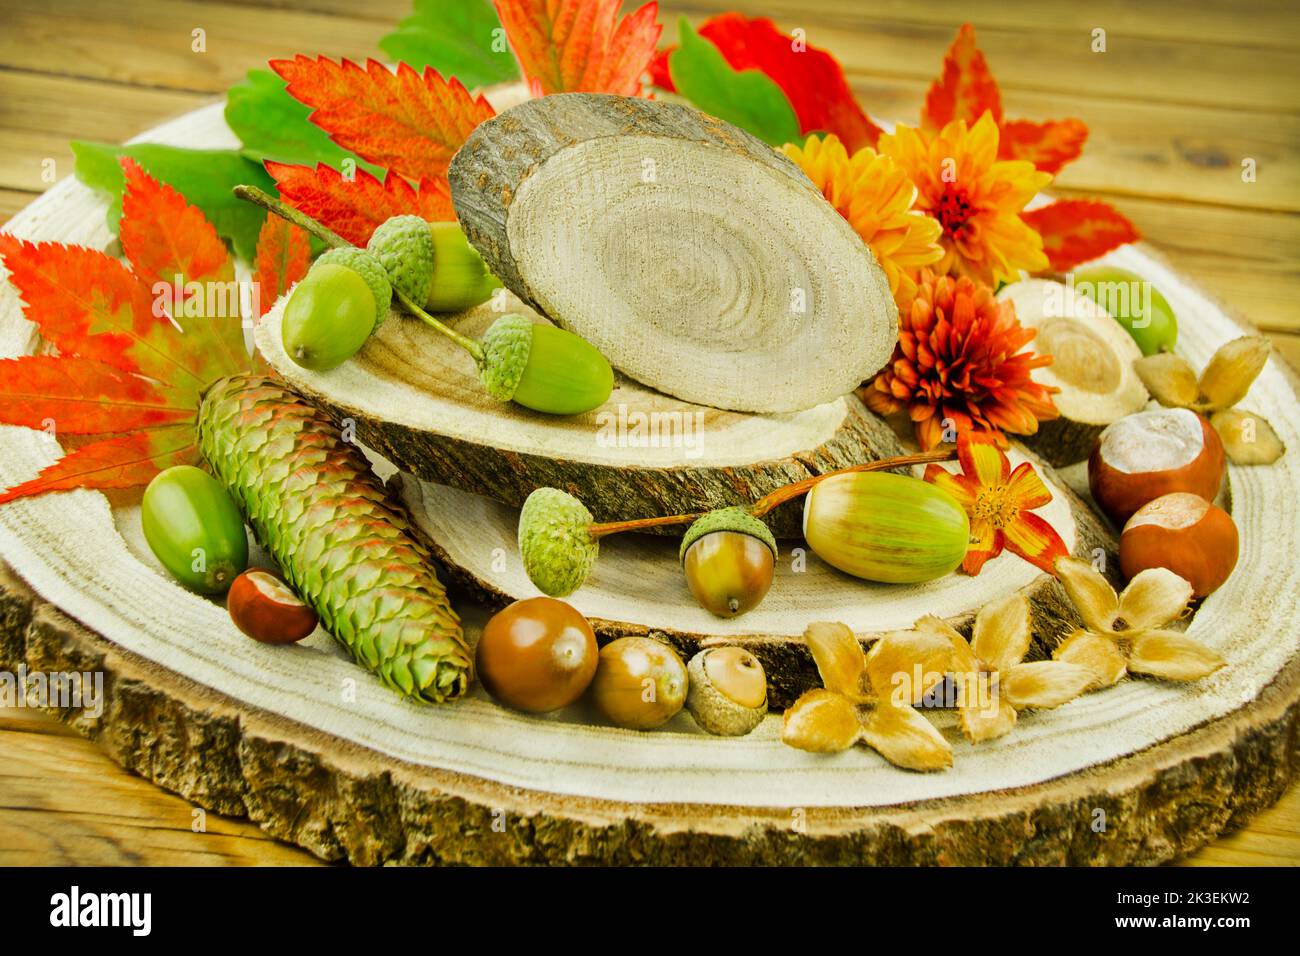 Natürliche dekoration im Herbst mit Kastanien, Eicheln, Blumen und Herbstlaub auf Hol Foto Stock